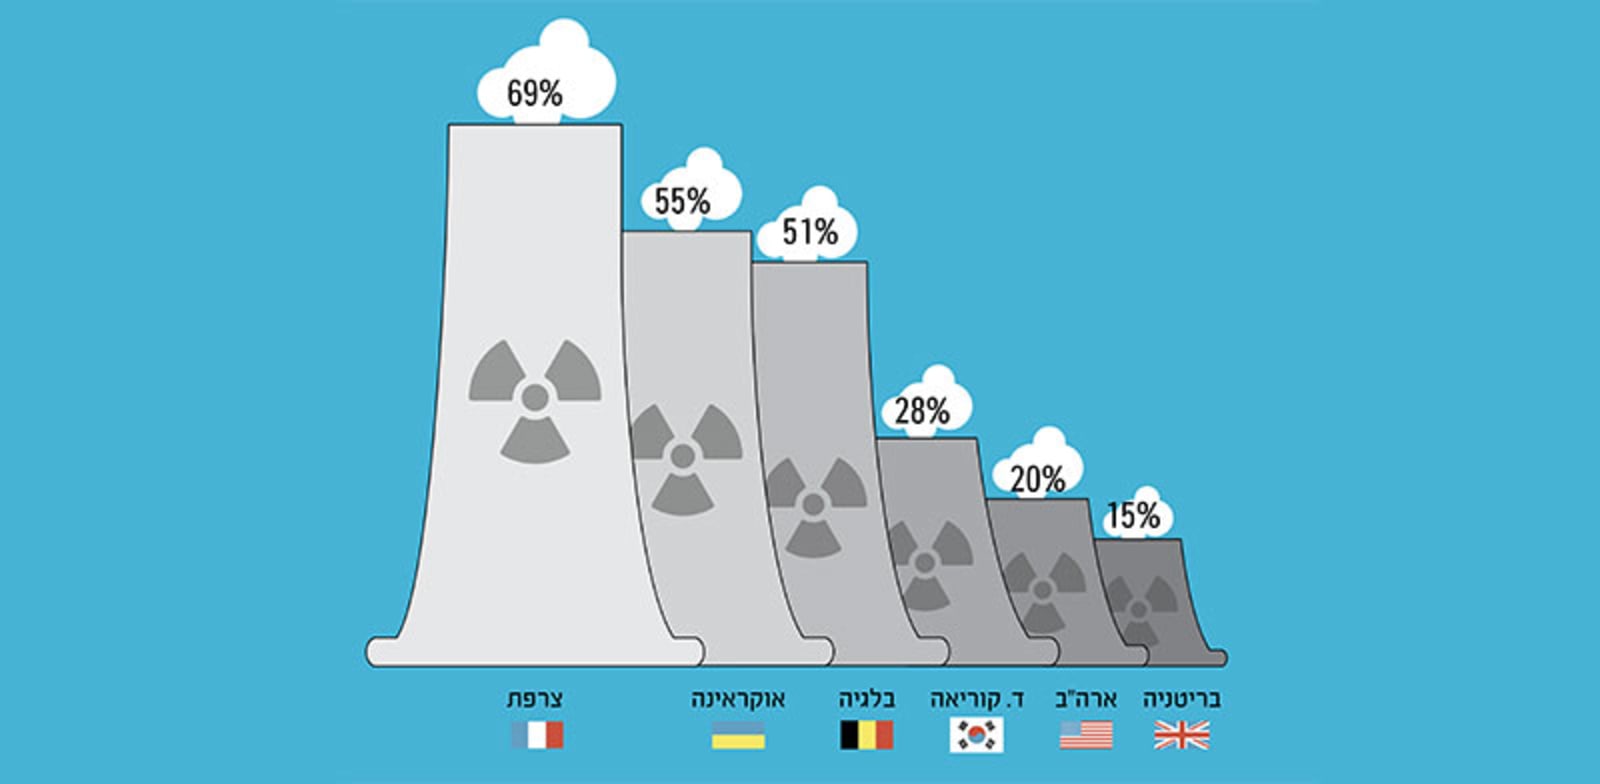 שיעור האנרגיה הגרעינית מייצור החשמל